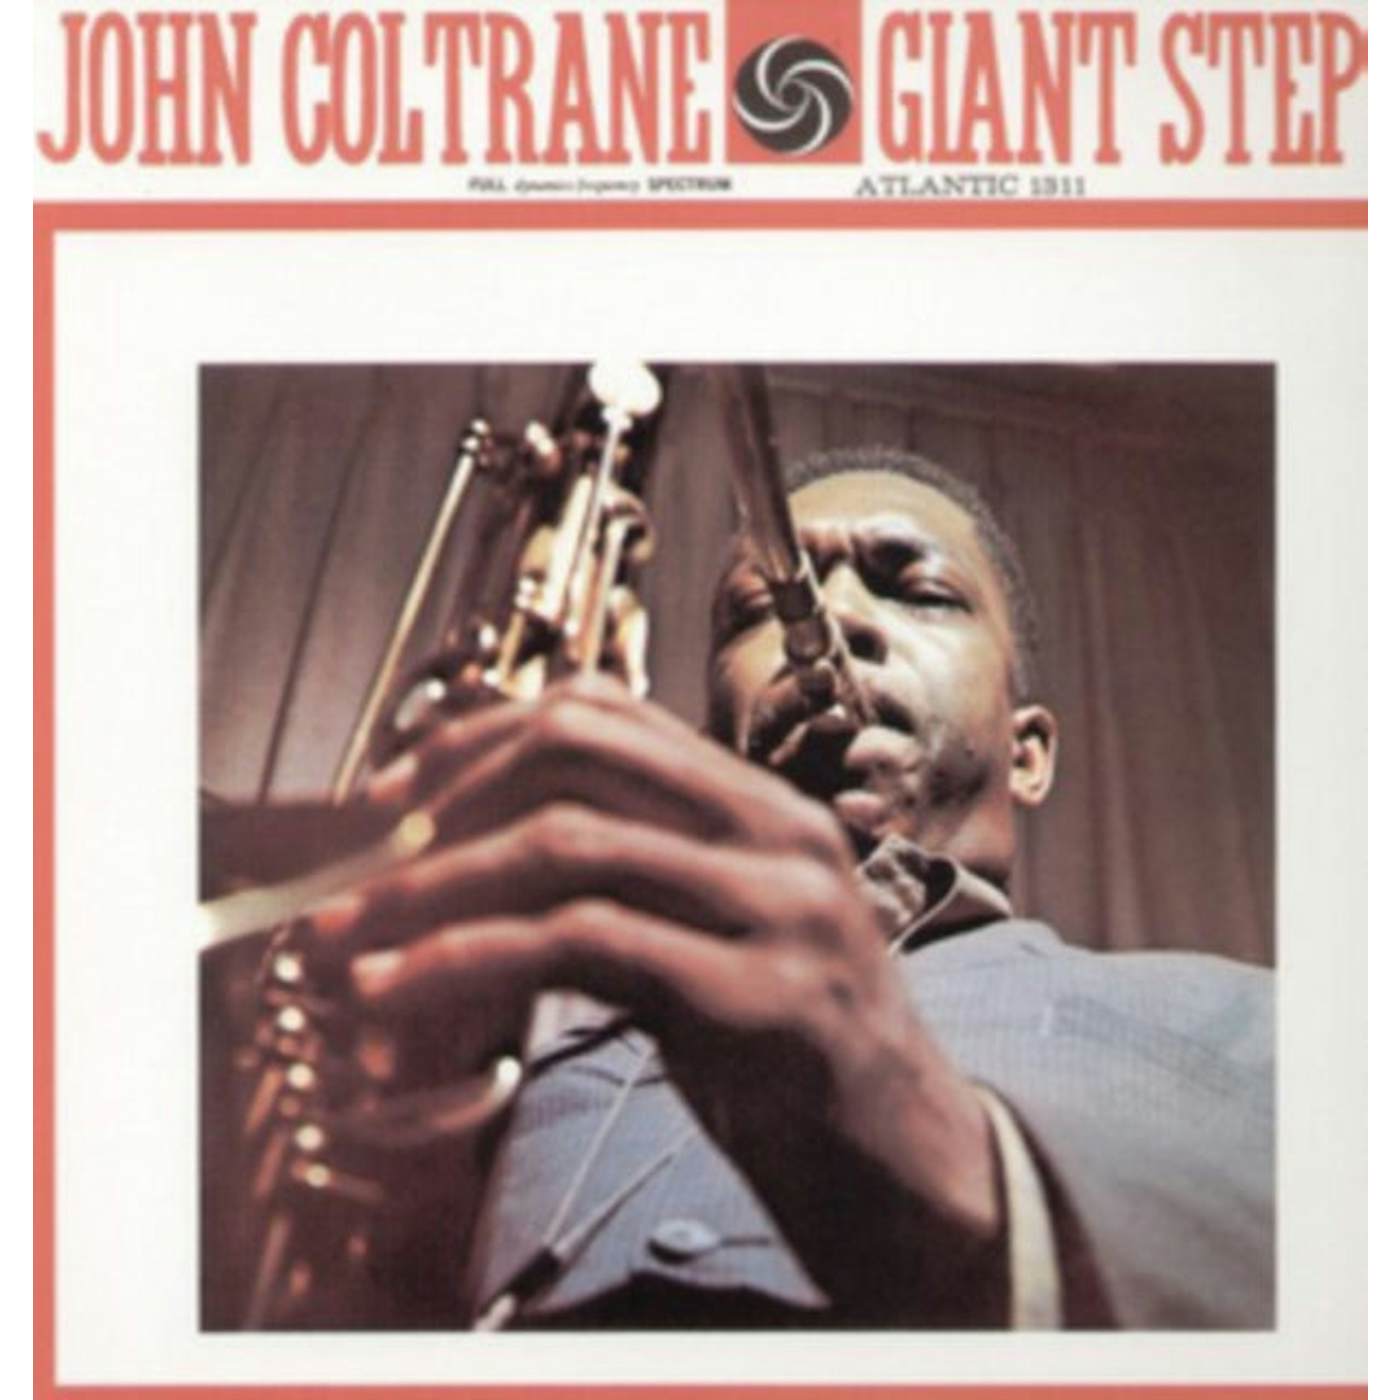 John Coltrane LP - Giant Steps (Vinyl)